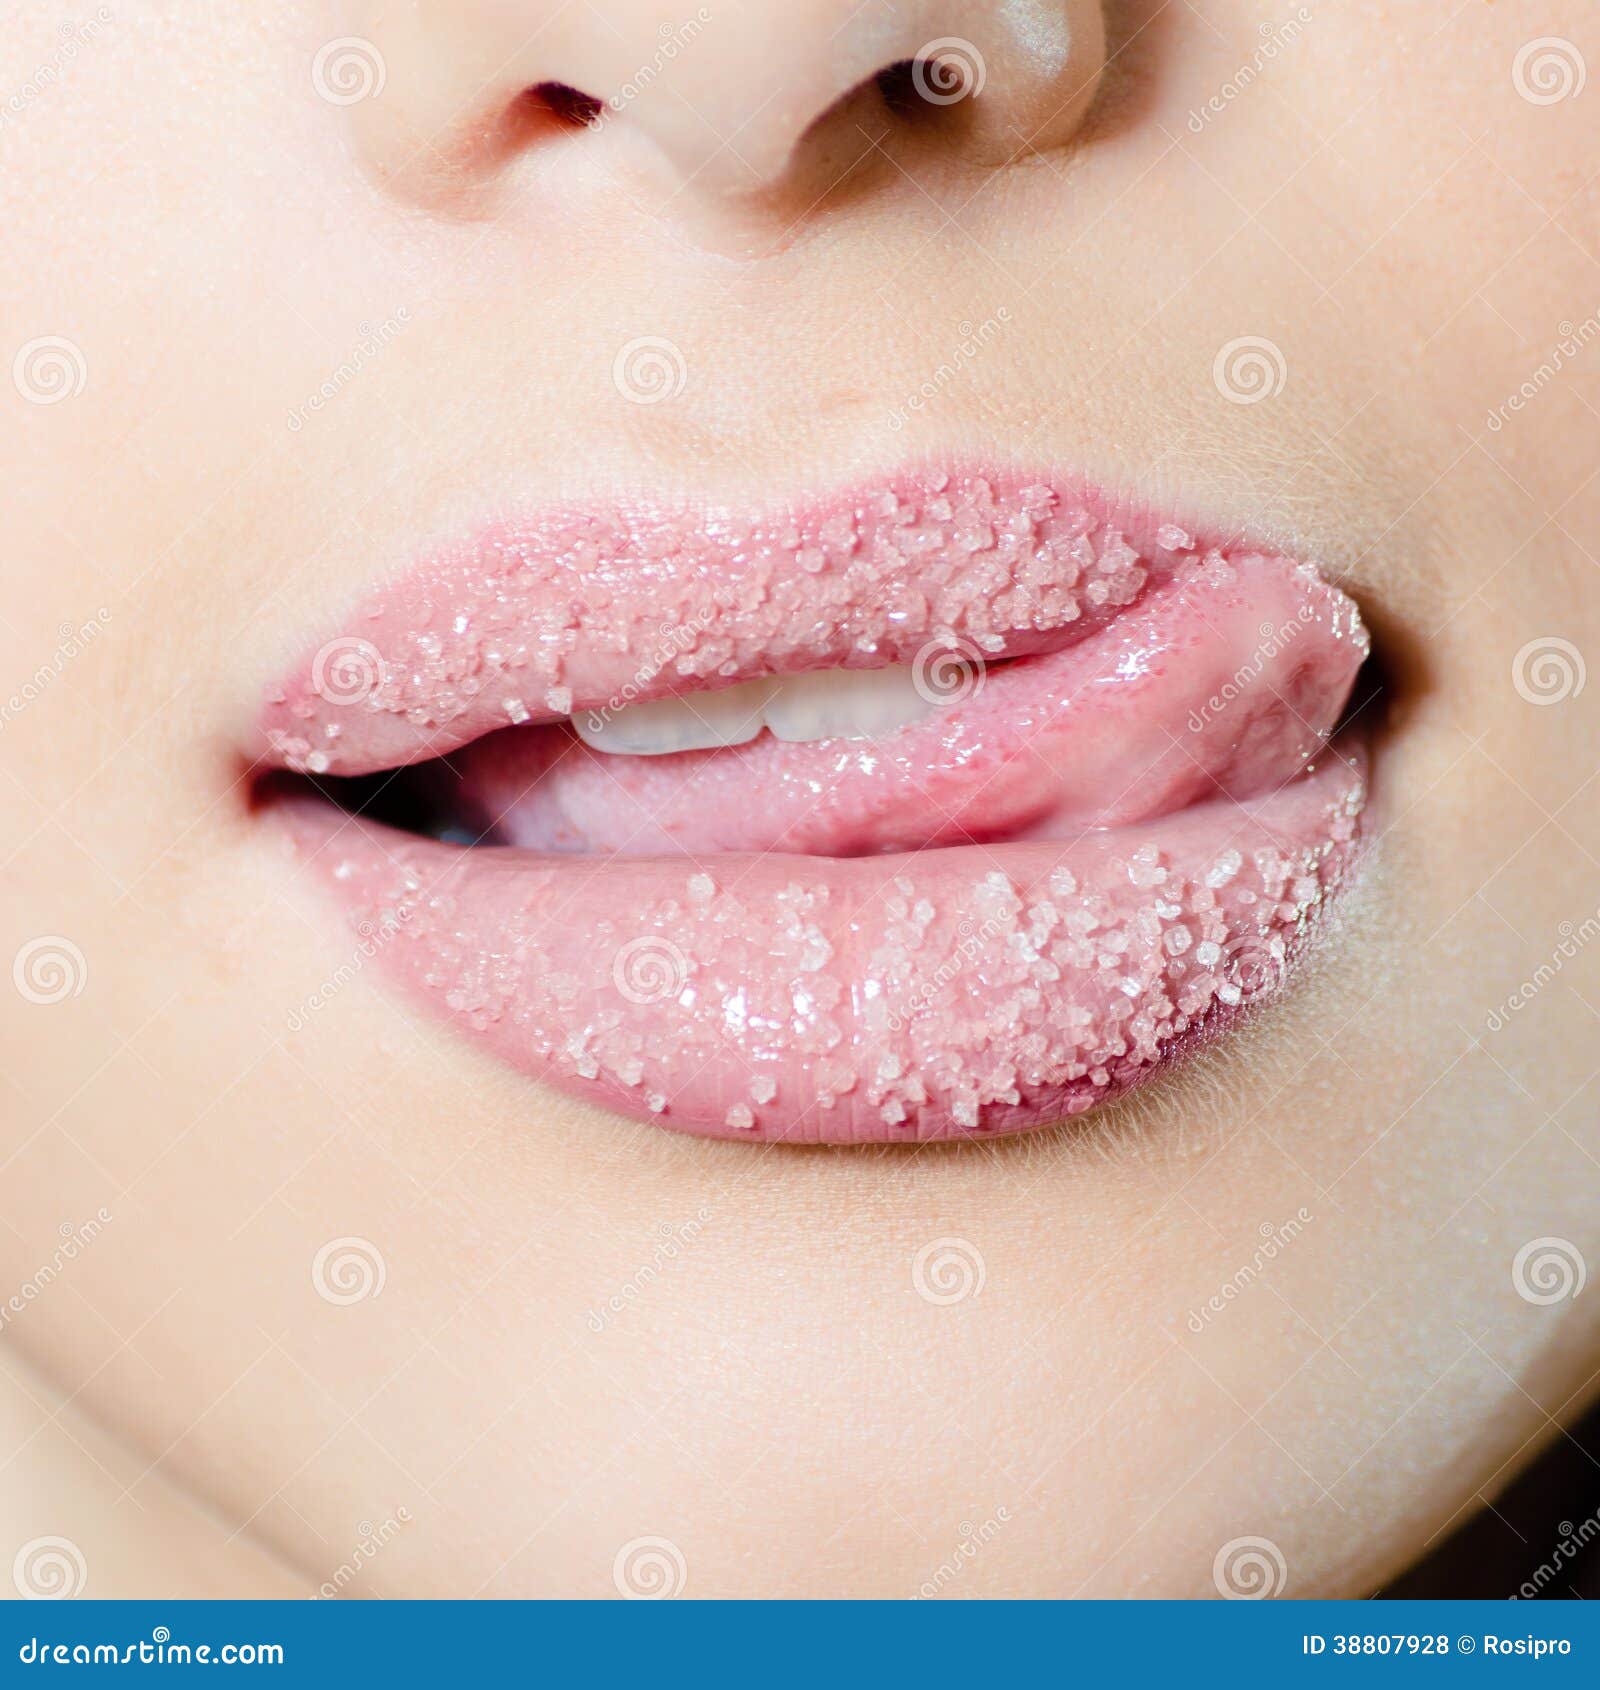 Утром сушит во рту. Красивые губы фото. Губы в сахаре. Вкус губ.